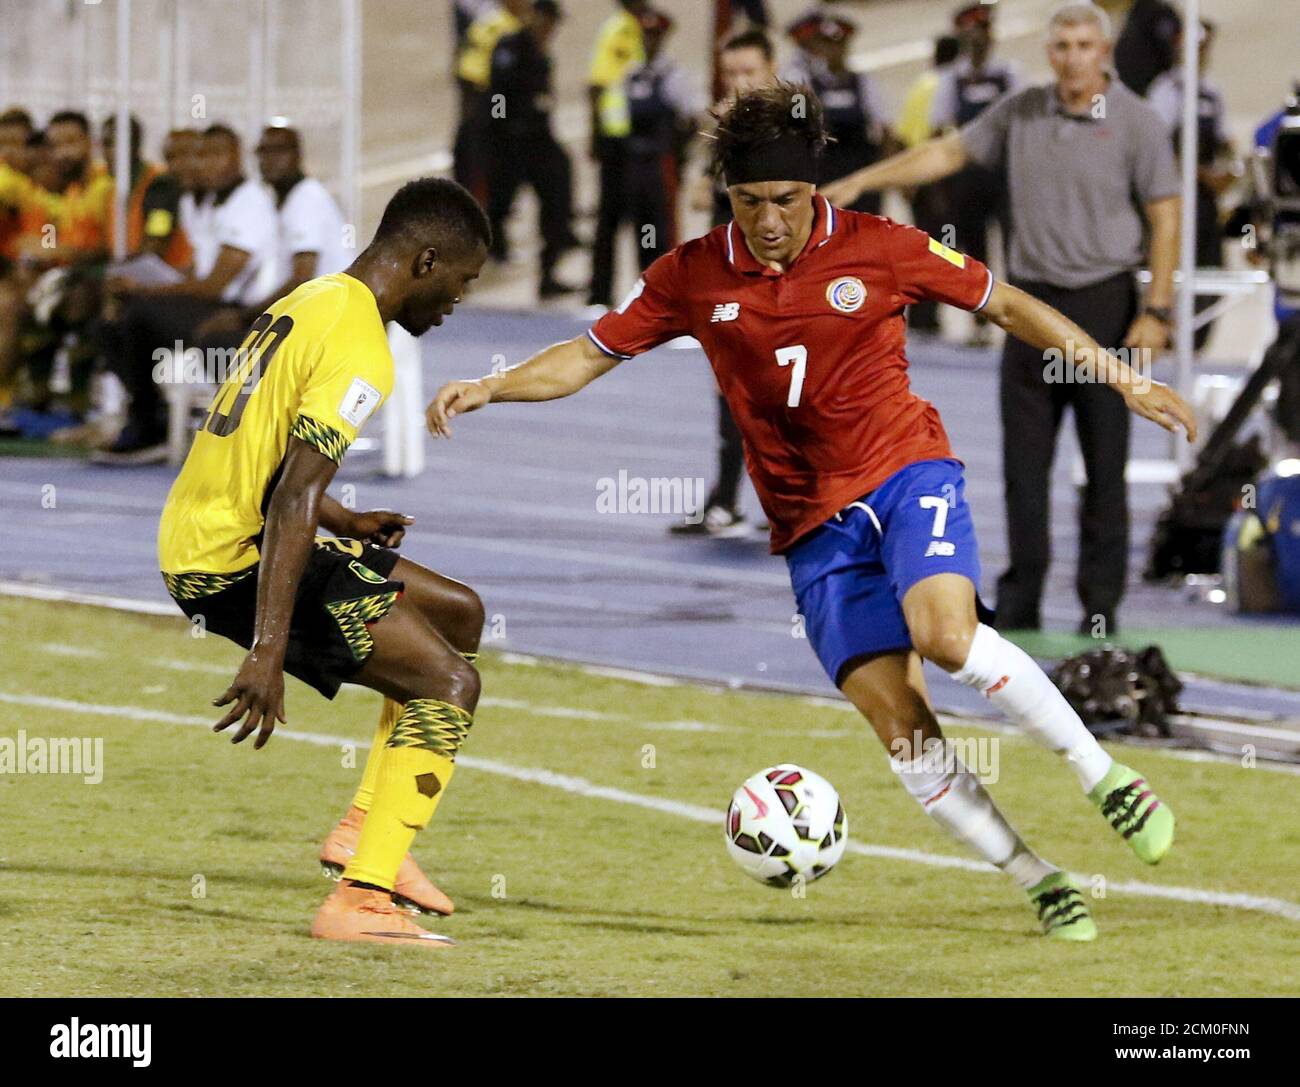 Calcio - Giamaica contro Costa Rica - Campionato del mondo 2018 Qualifier,  allo Stadio Nazionale di Kingston, Giamaica,